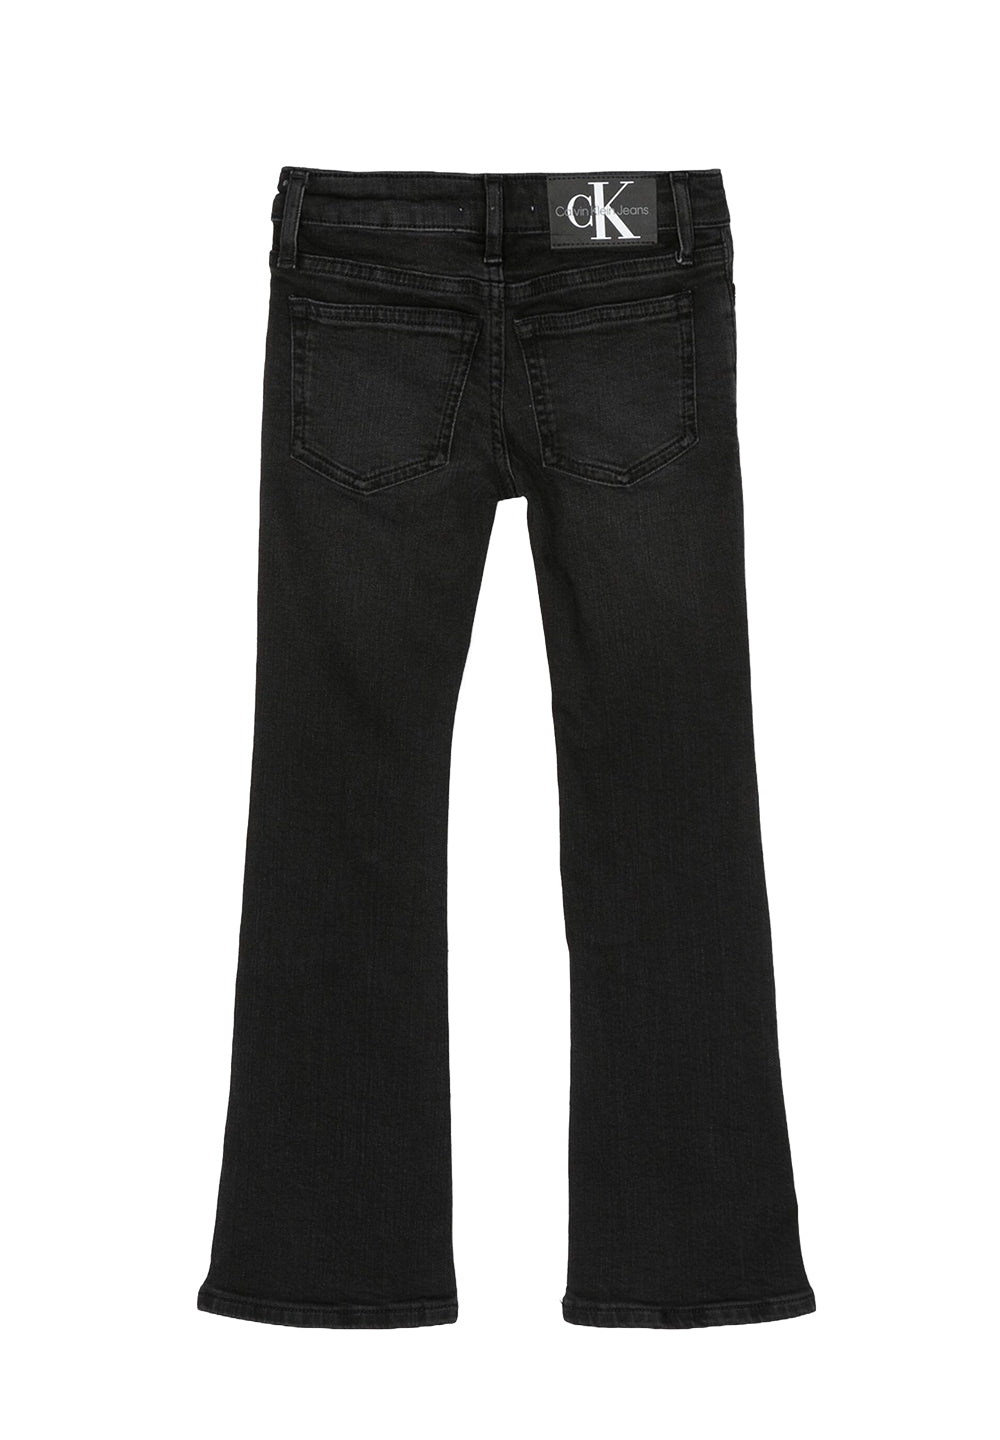 Black jeans for girls